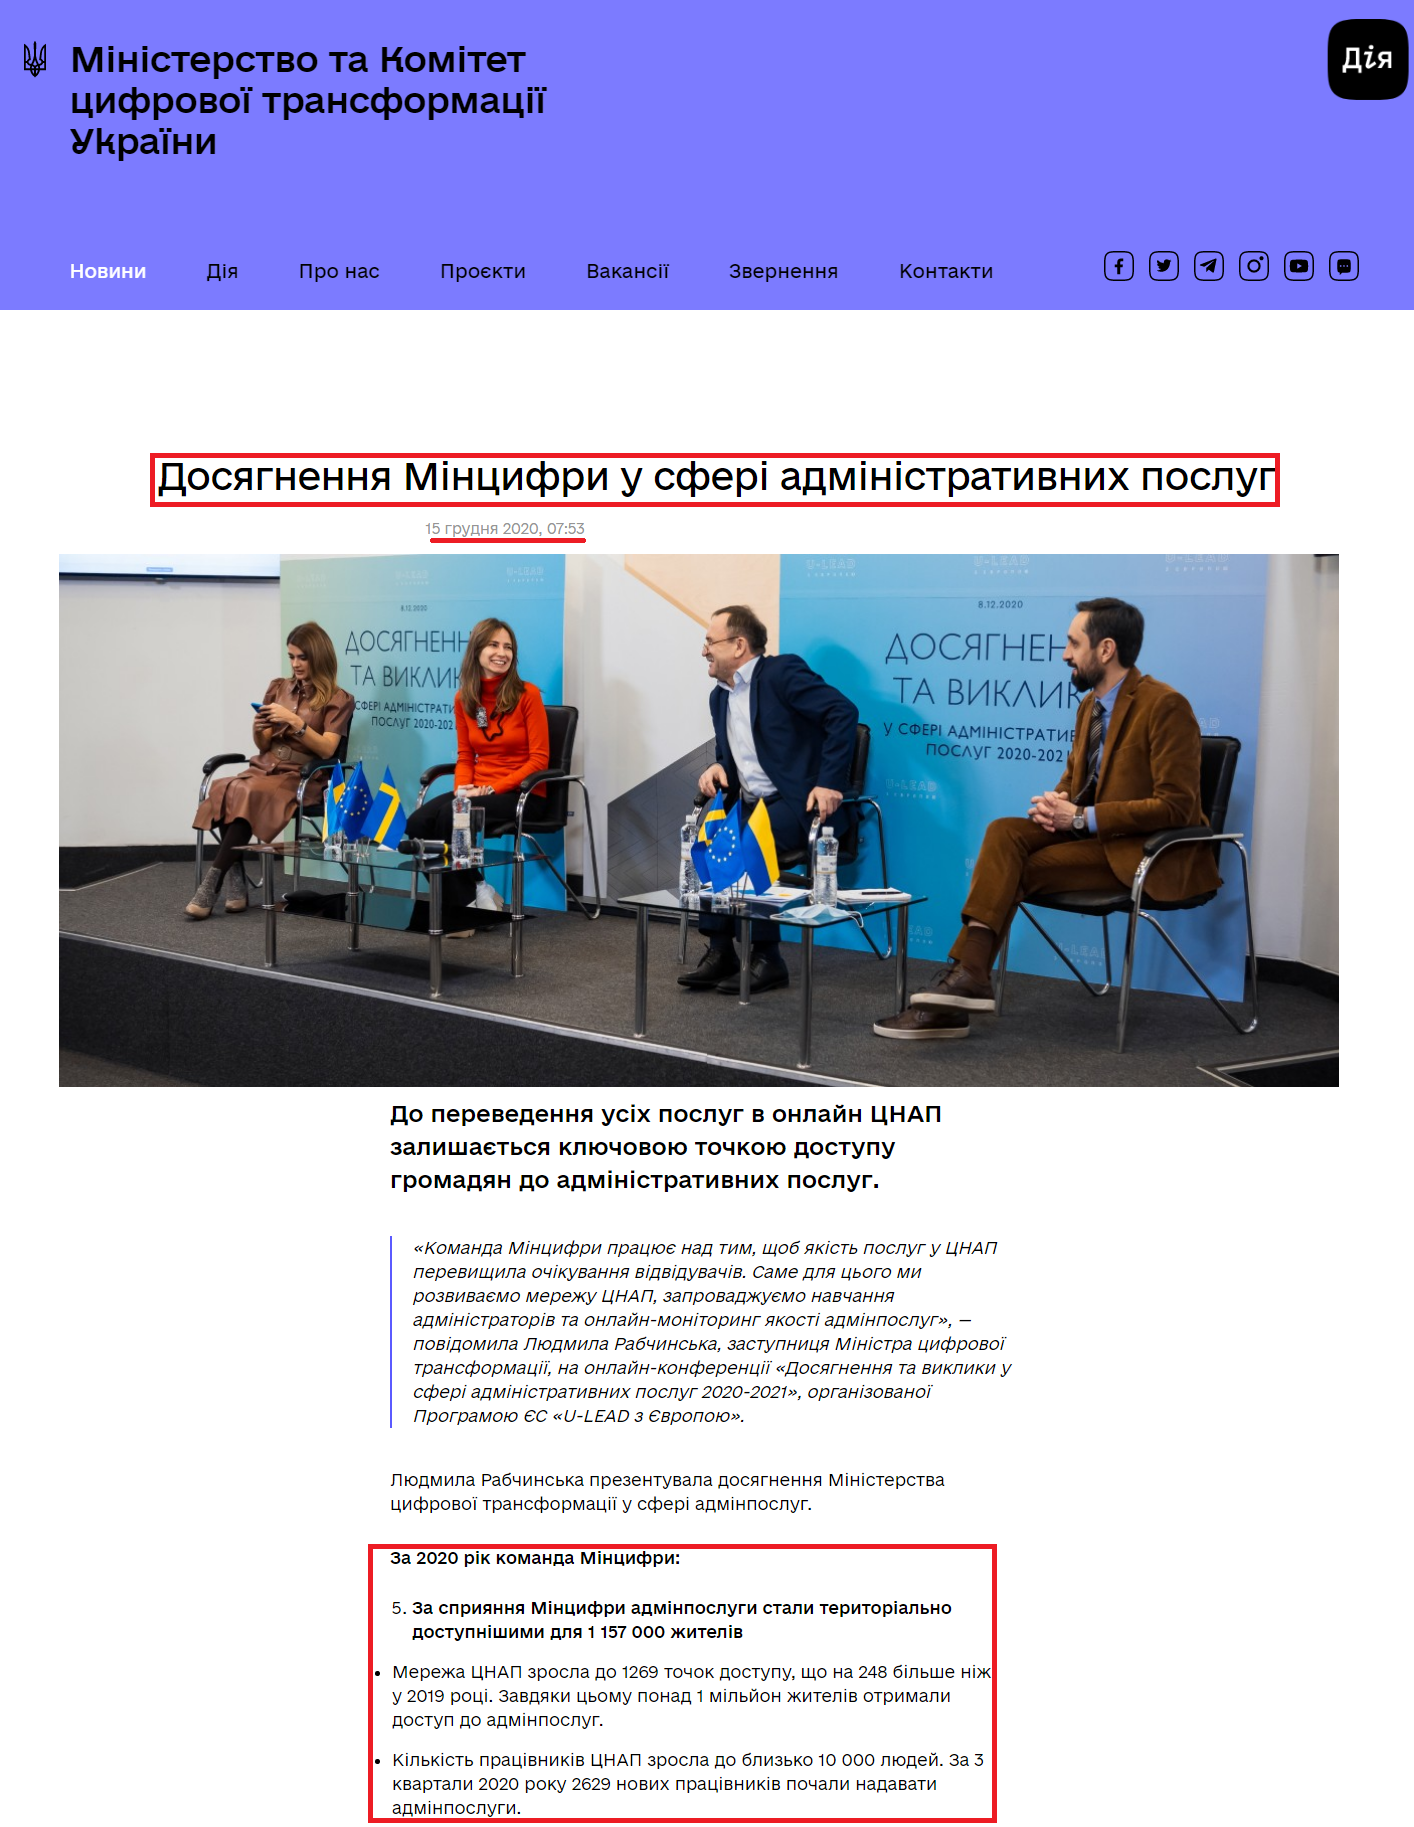 https://thedigital.gov.ua/news/dosyagnennya-mintsifri-u-sferi-administrativnikh-poslug